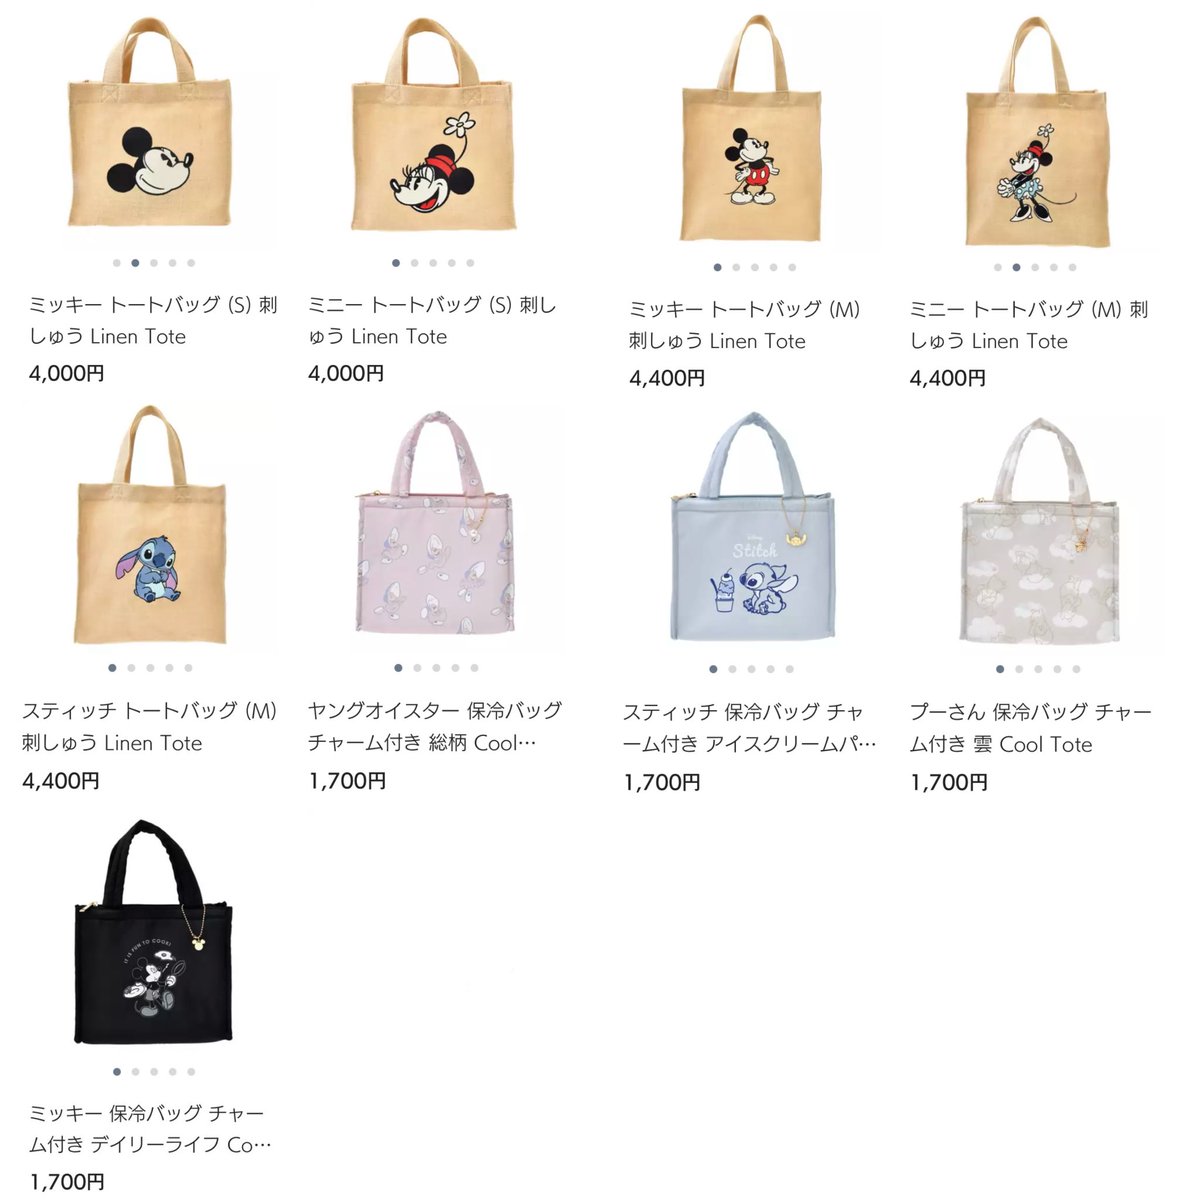 【ディズニーストア】 4月23日より、これからの季節にぴったりな涼しげなリネン素材のトートバッグが販売されます。 shopdisney.disney.co.jp/fashion/bag/to… #ディズニーストア